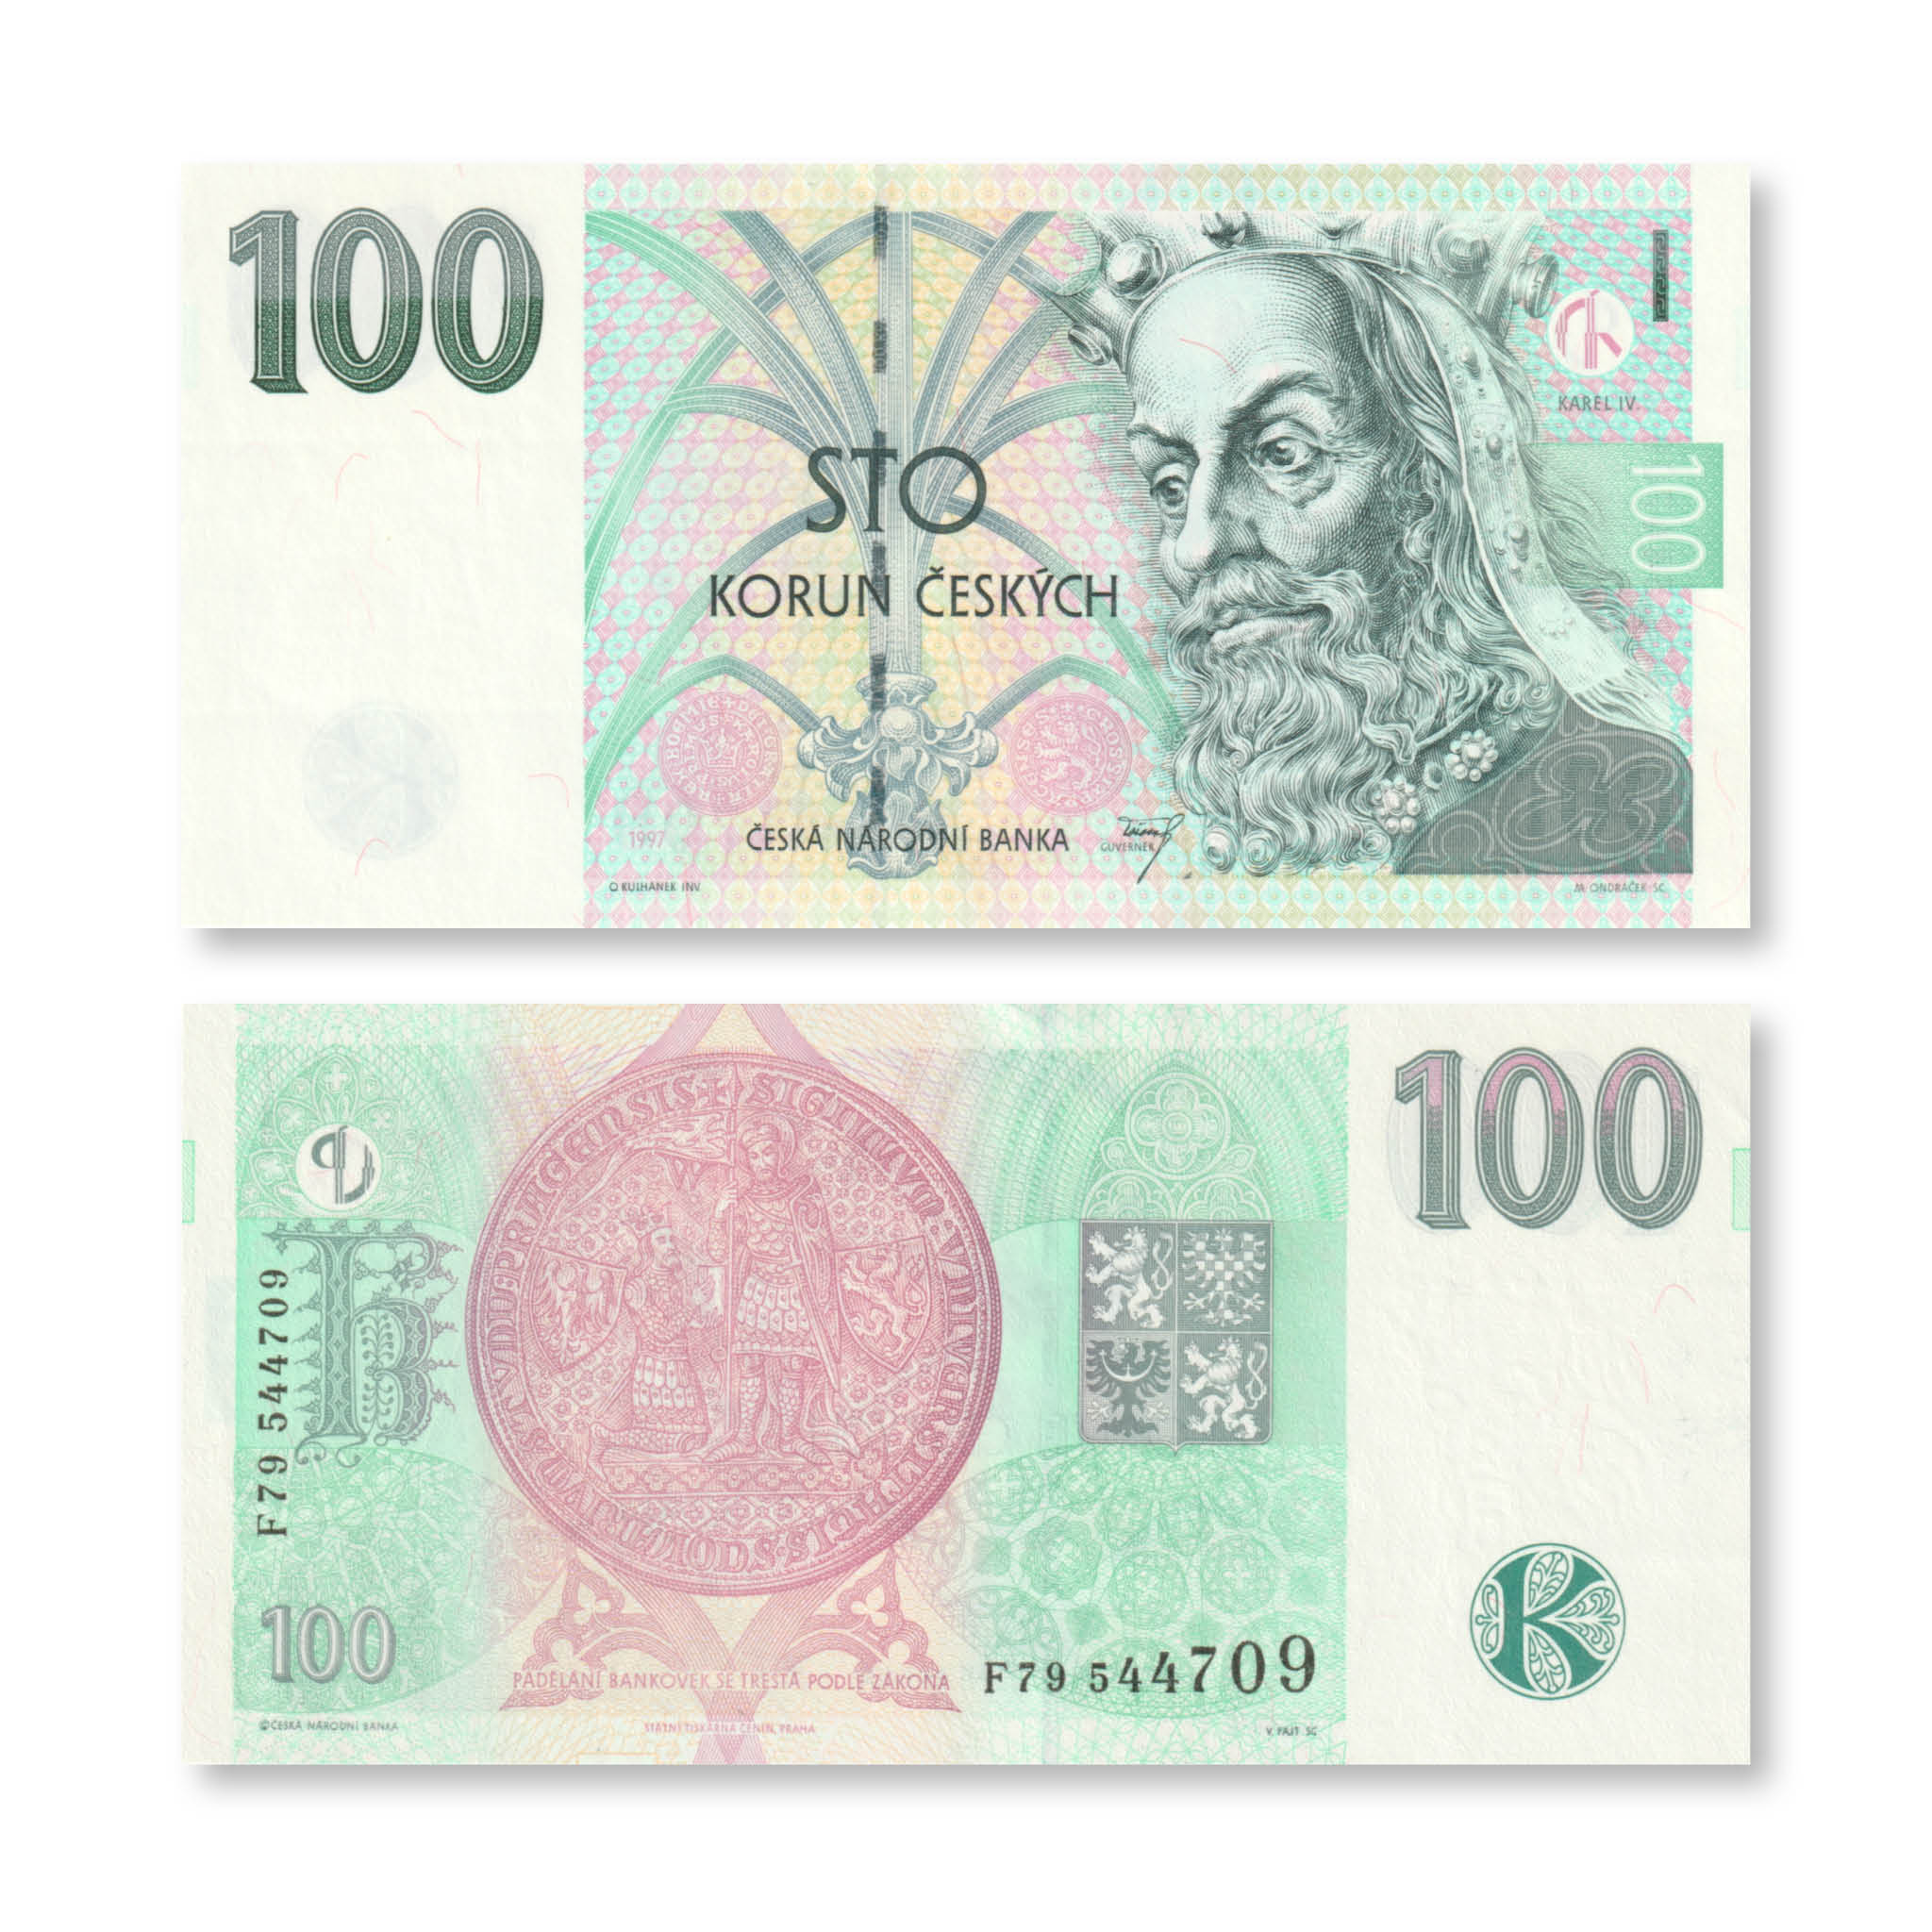 Czech Republic 100 Koruna, 1997, B118a, P18e, UNC - Robert's World Money - World Banknotes